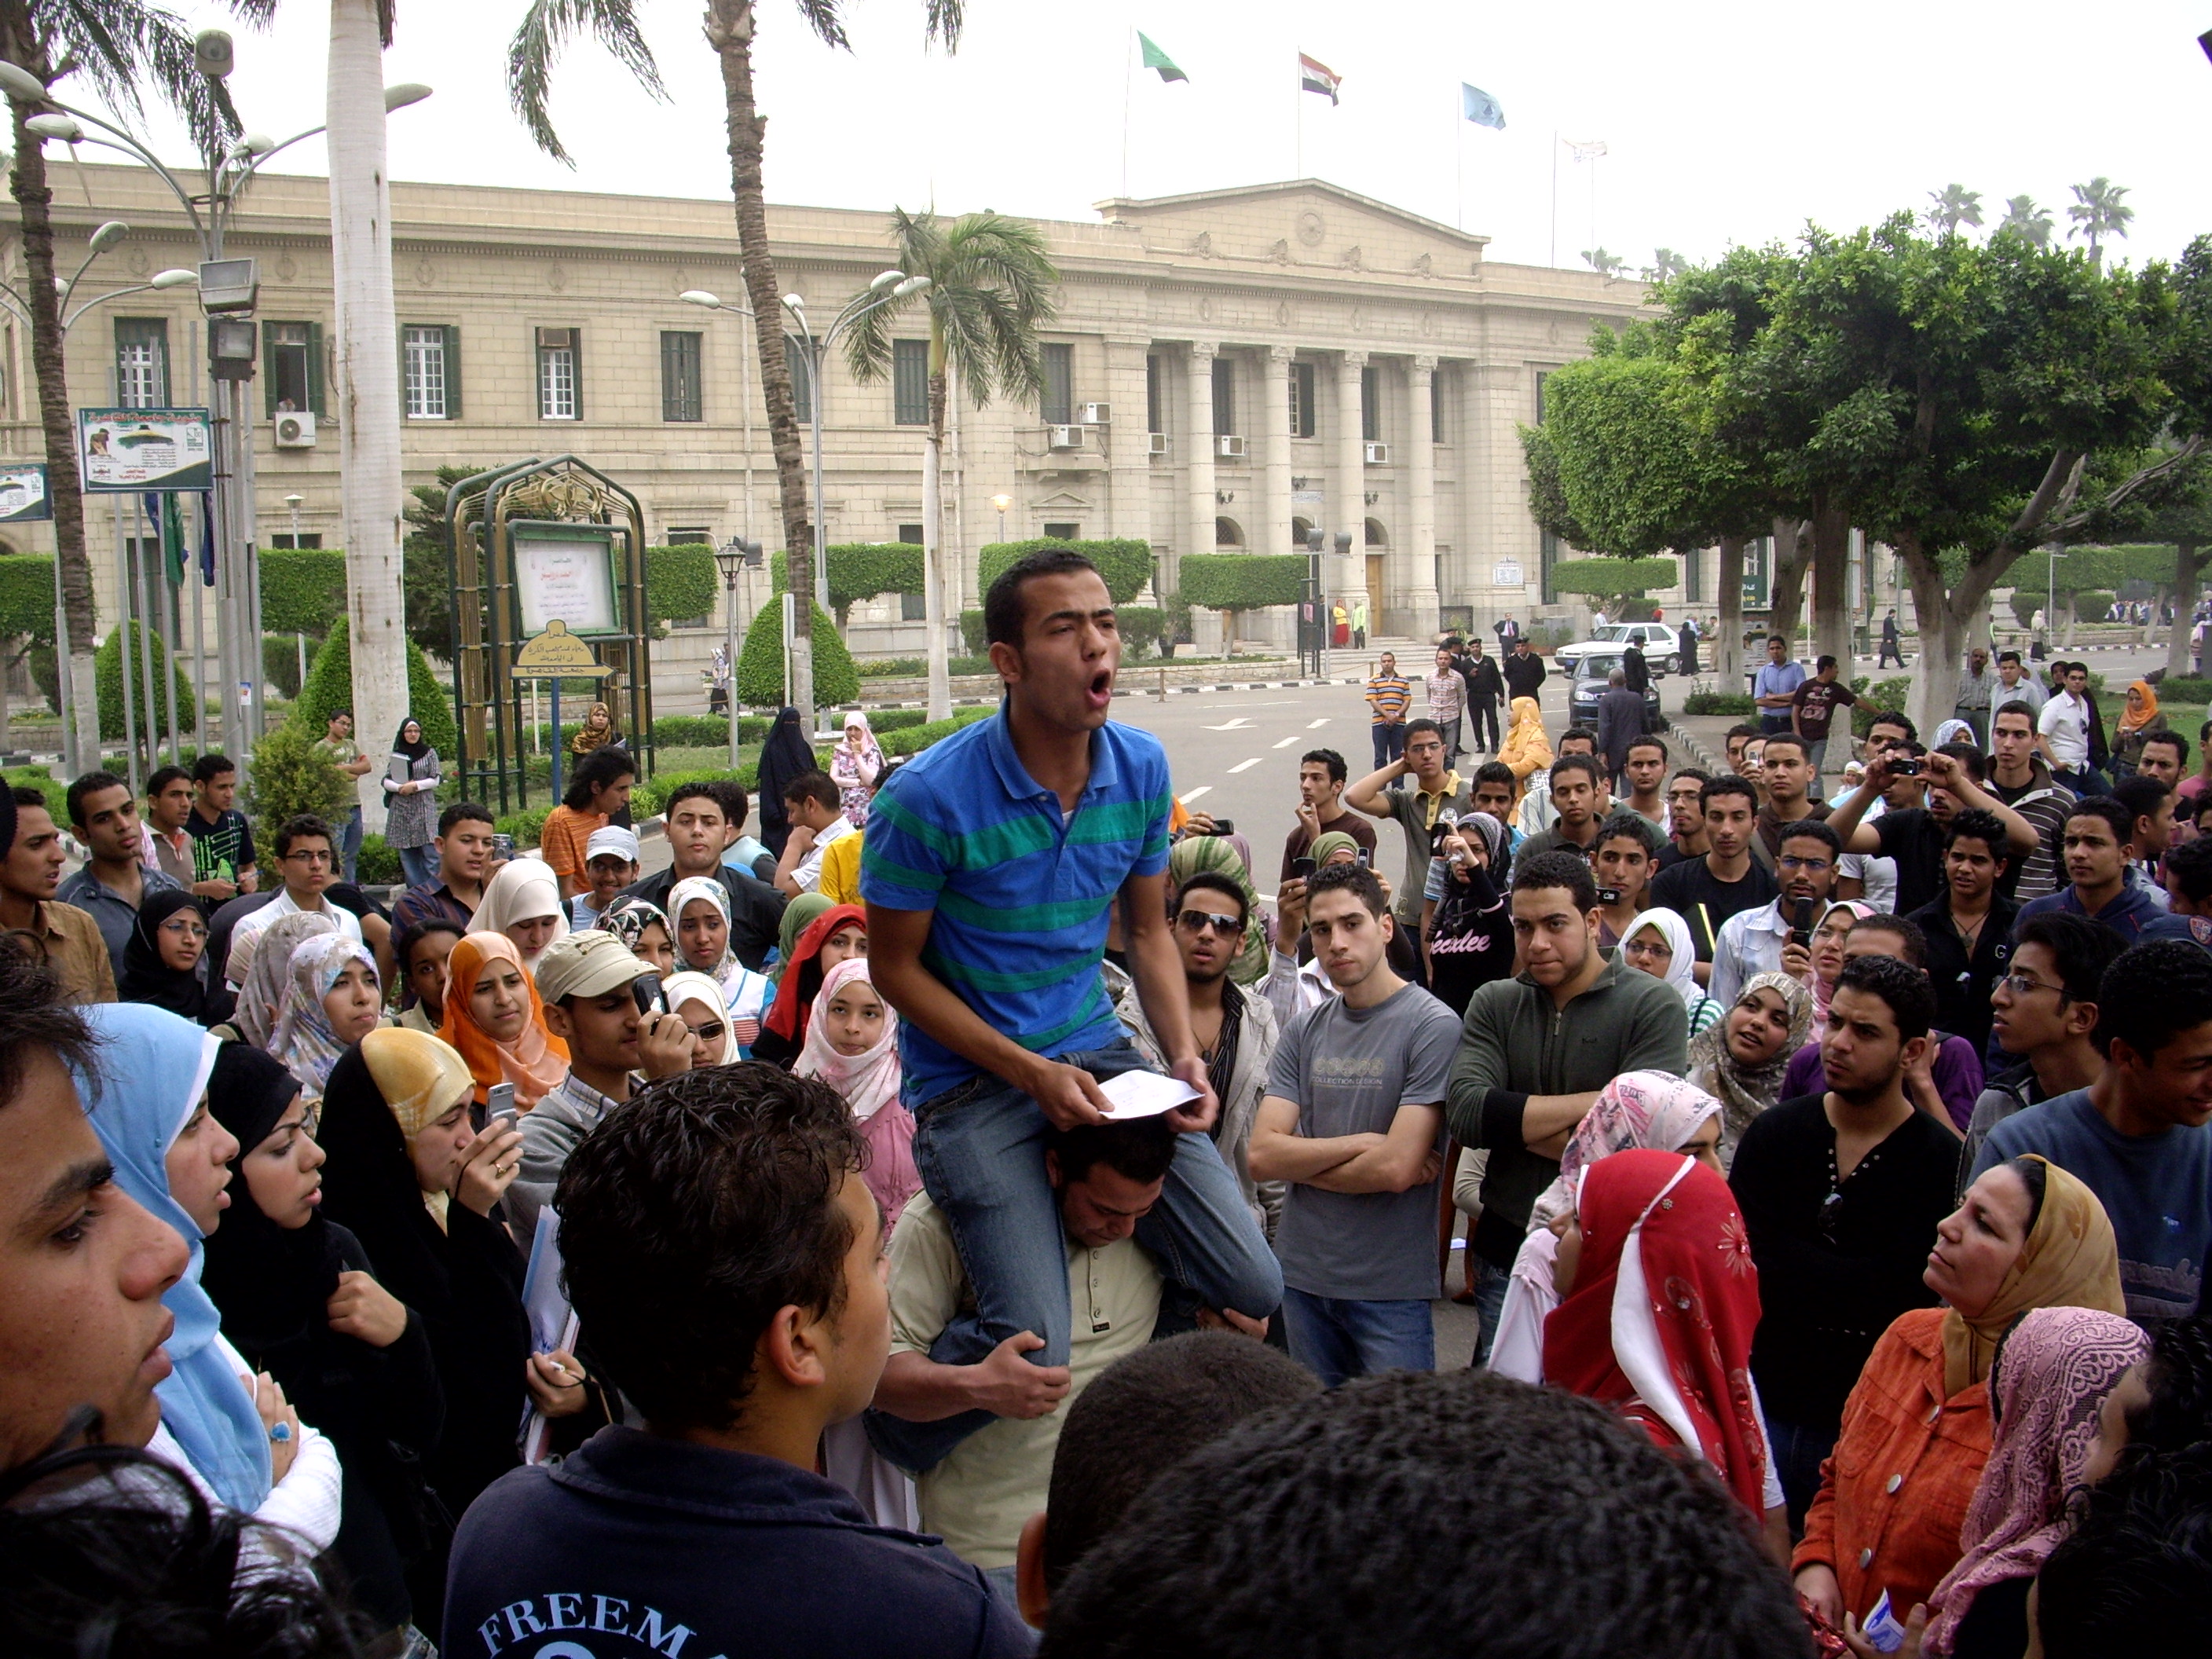 طلاب جامعة القاهرة يتظاهرون تأييدا للمحلة ٦ أبريل ٢٠٠٨، تصوير مصطفى محمود